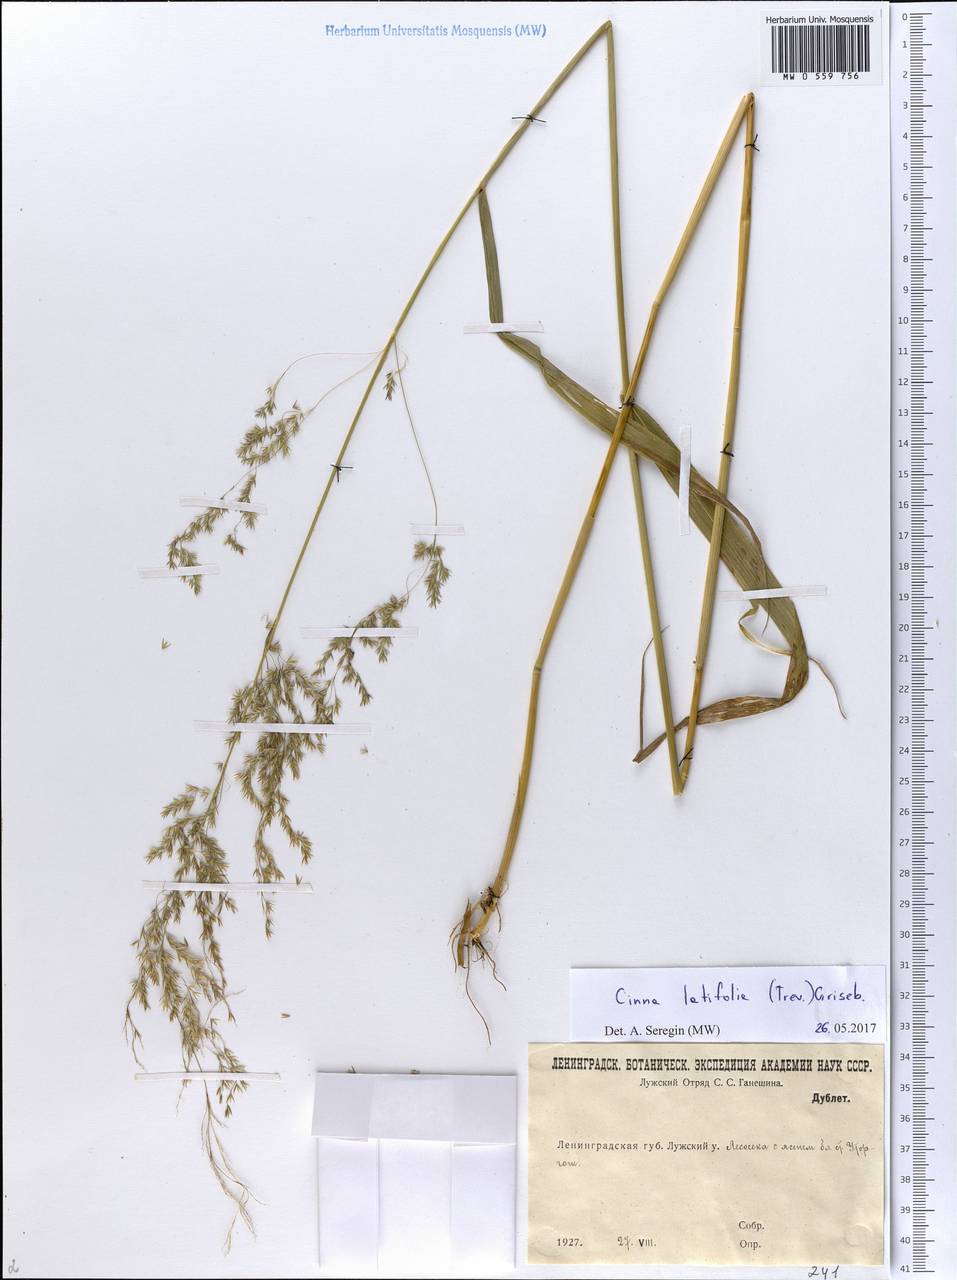 Cinna latifolia (Trevir. ex Göpp.) Griseb., Eastern Europe, North-Western region (E2) (Russia)